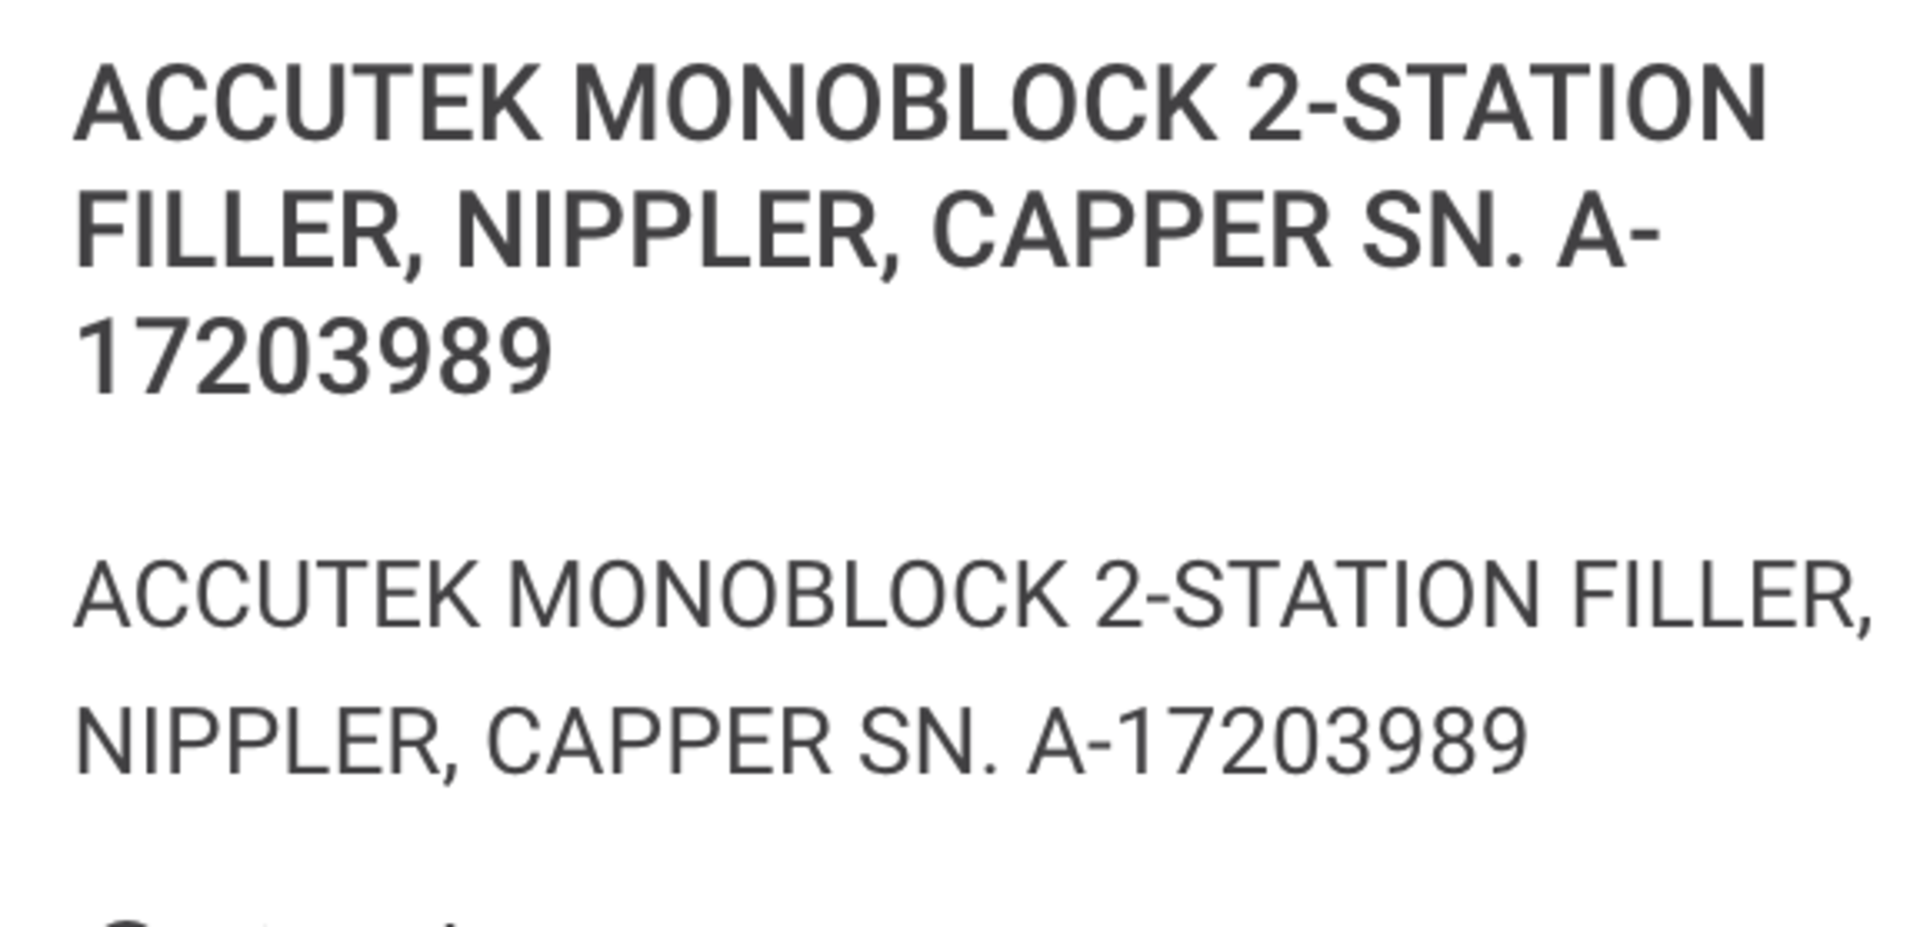 Accutek Monoblock 2-station Filler - Image 31 of 36